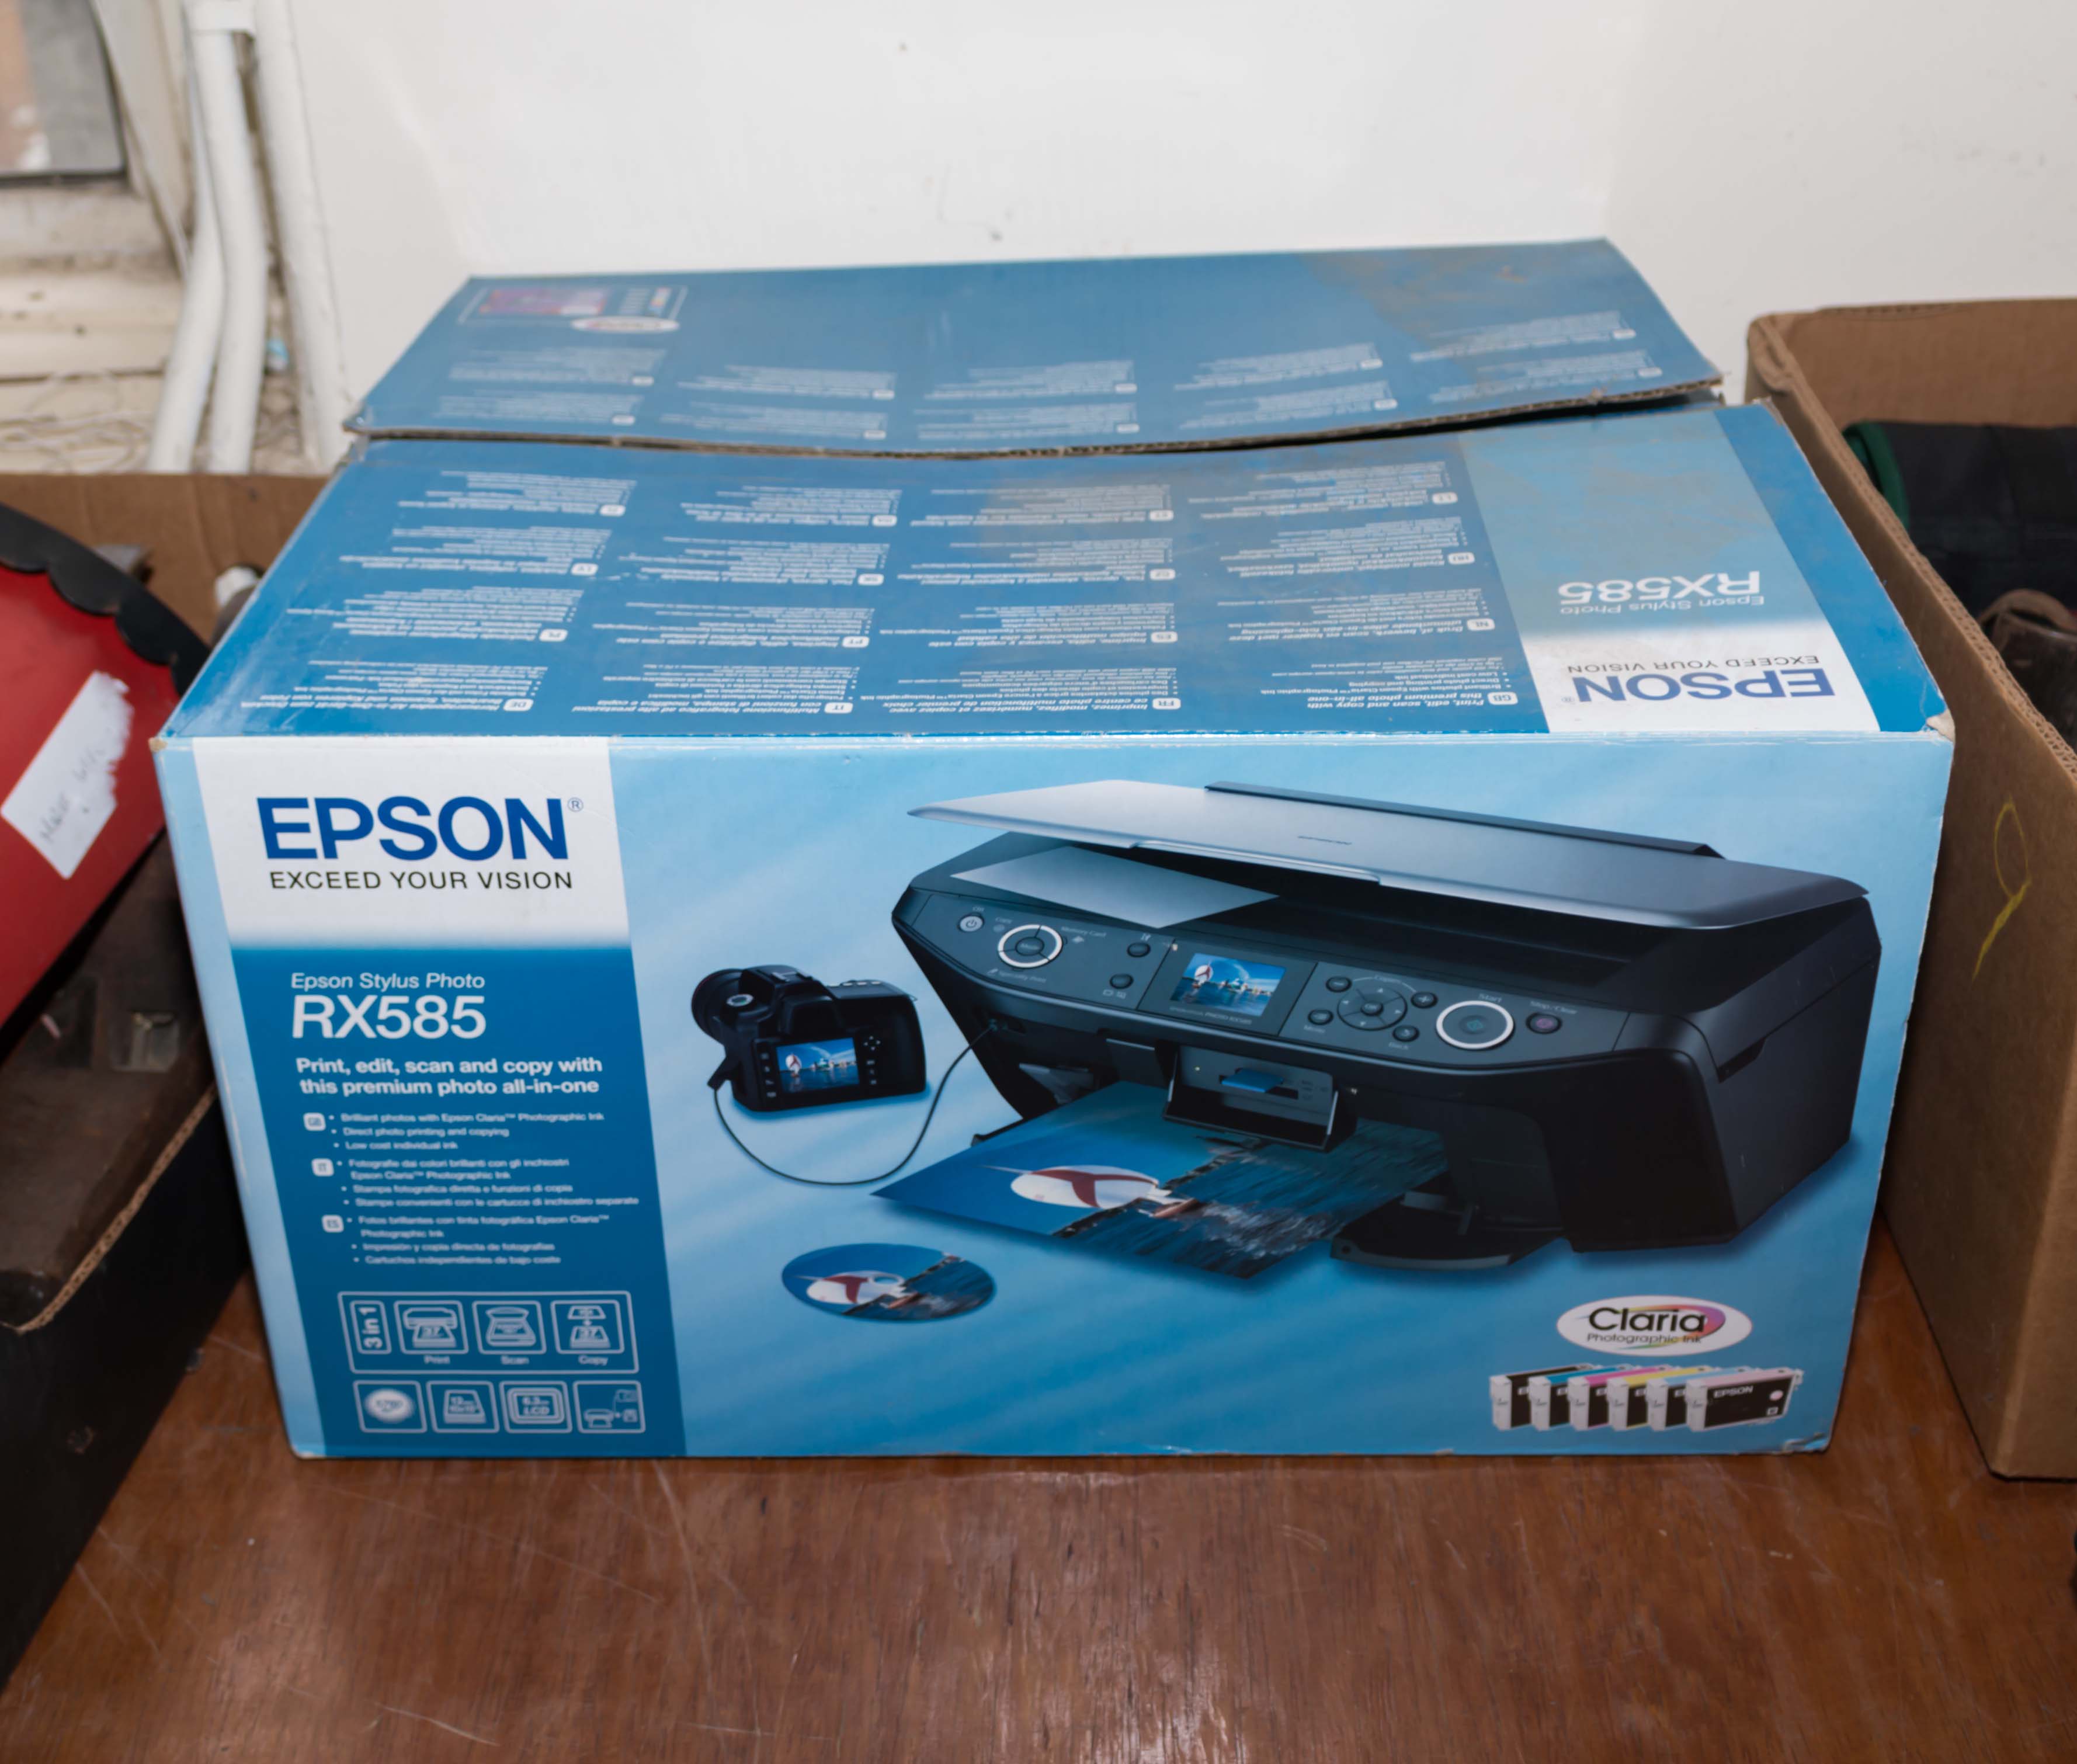 An Epson RX585 printer